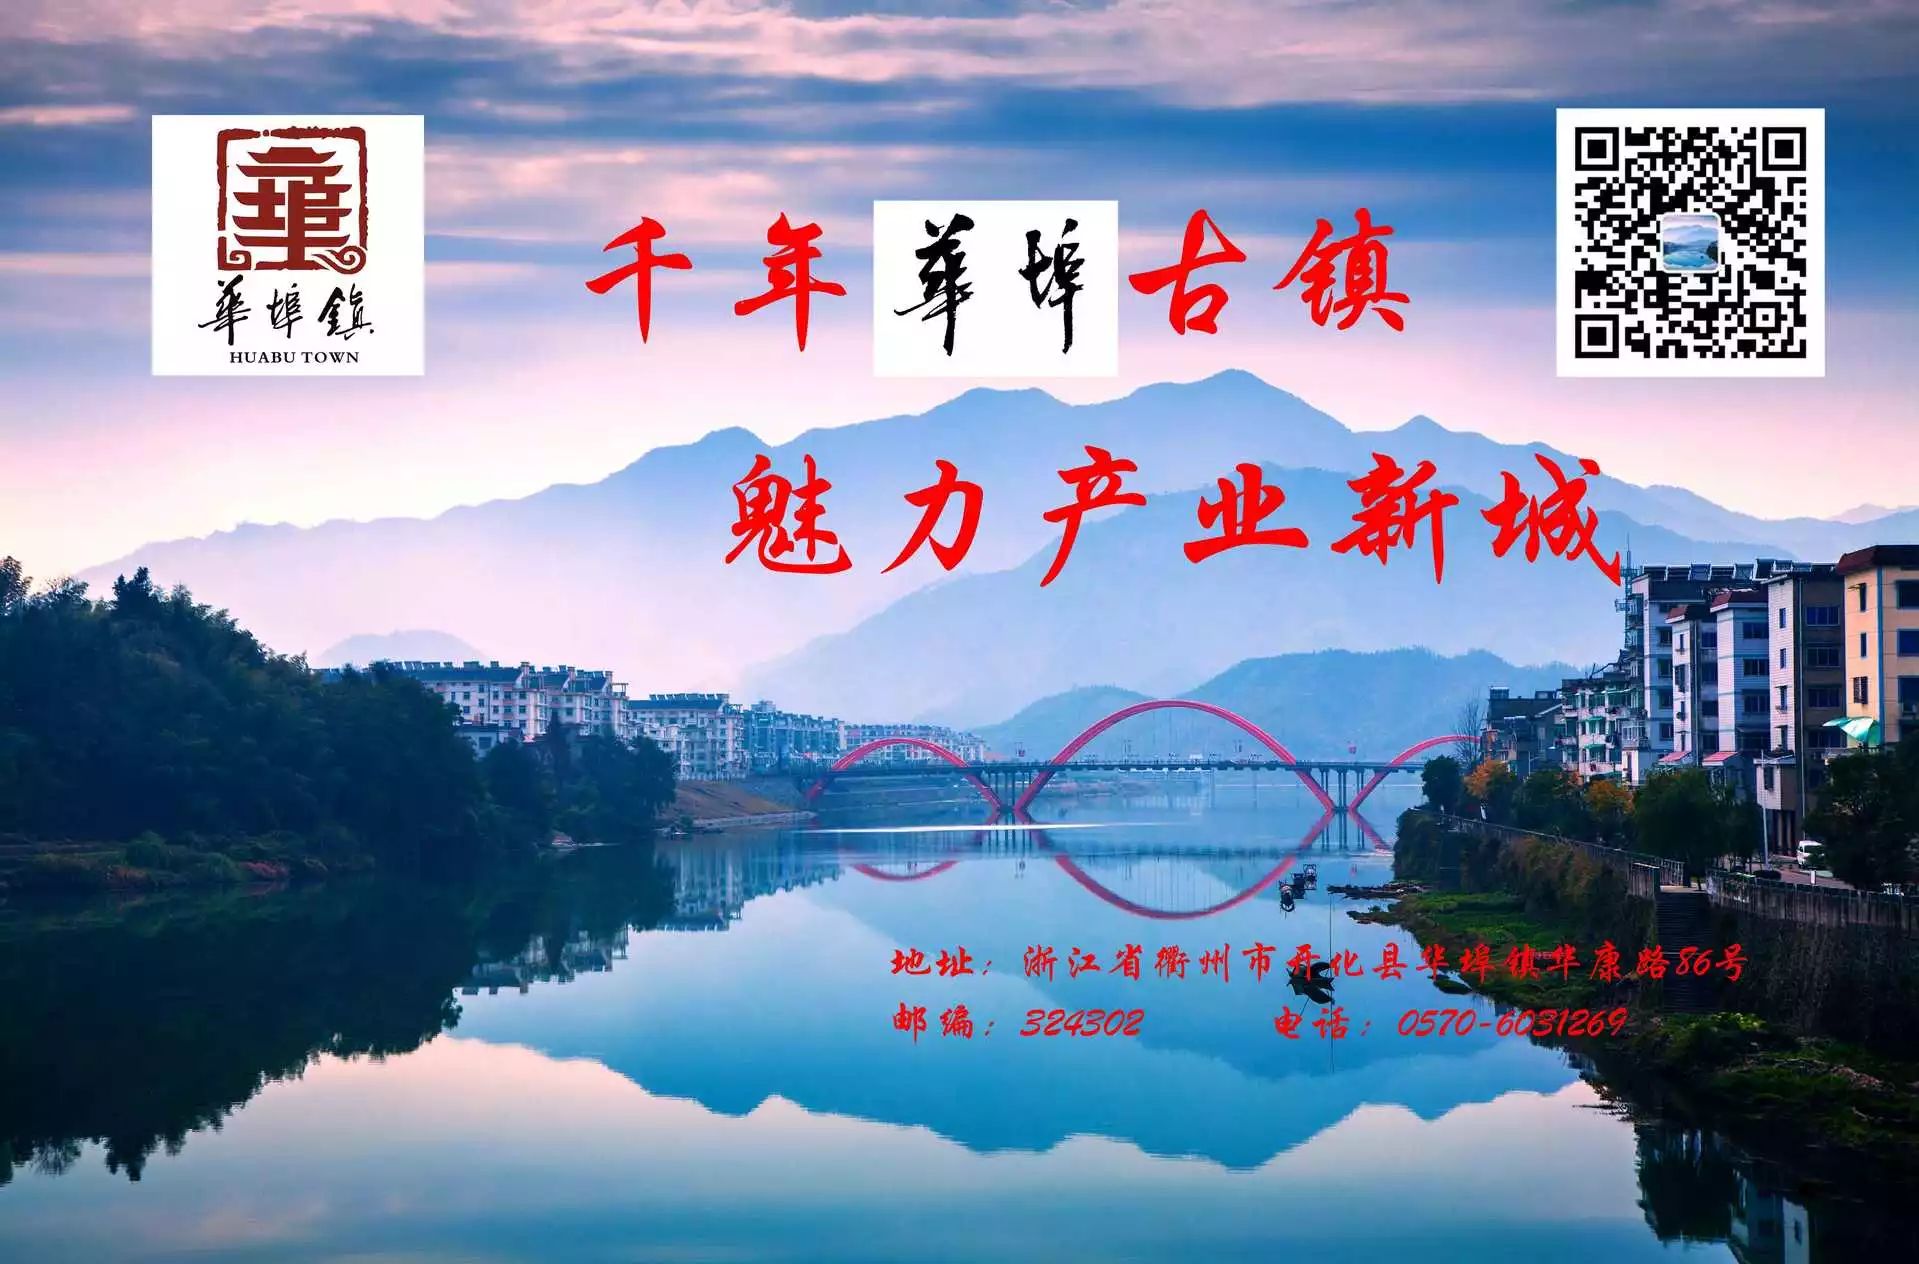 华埠镇召开计划生育协会第七次会员代表大会!